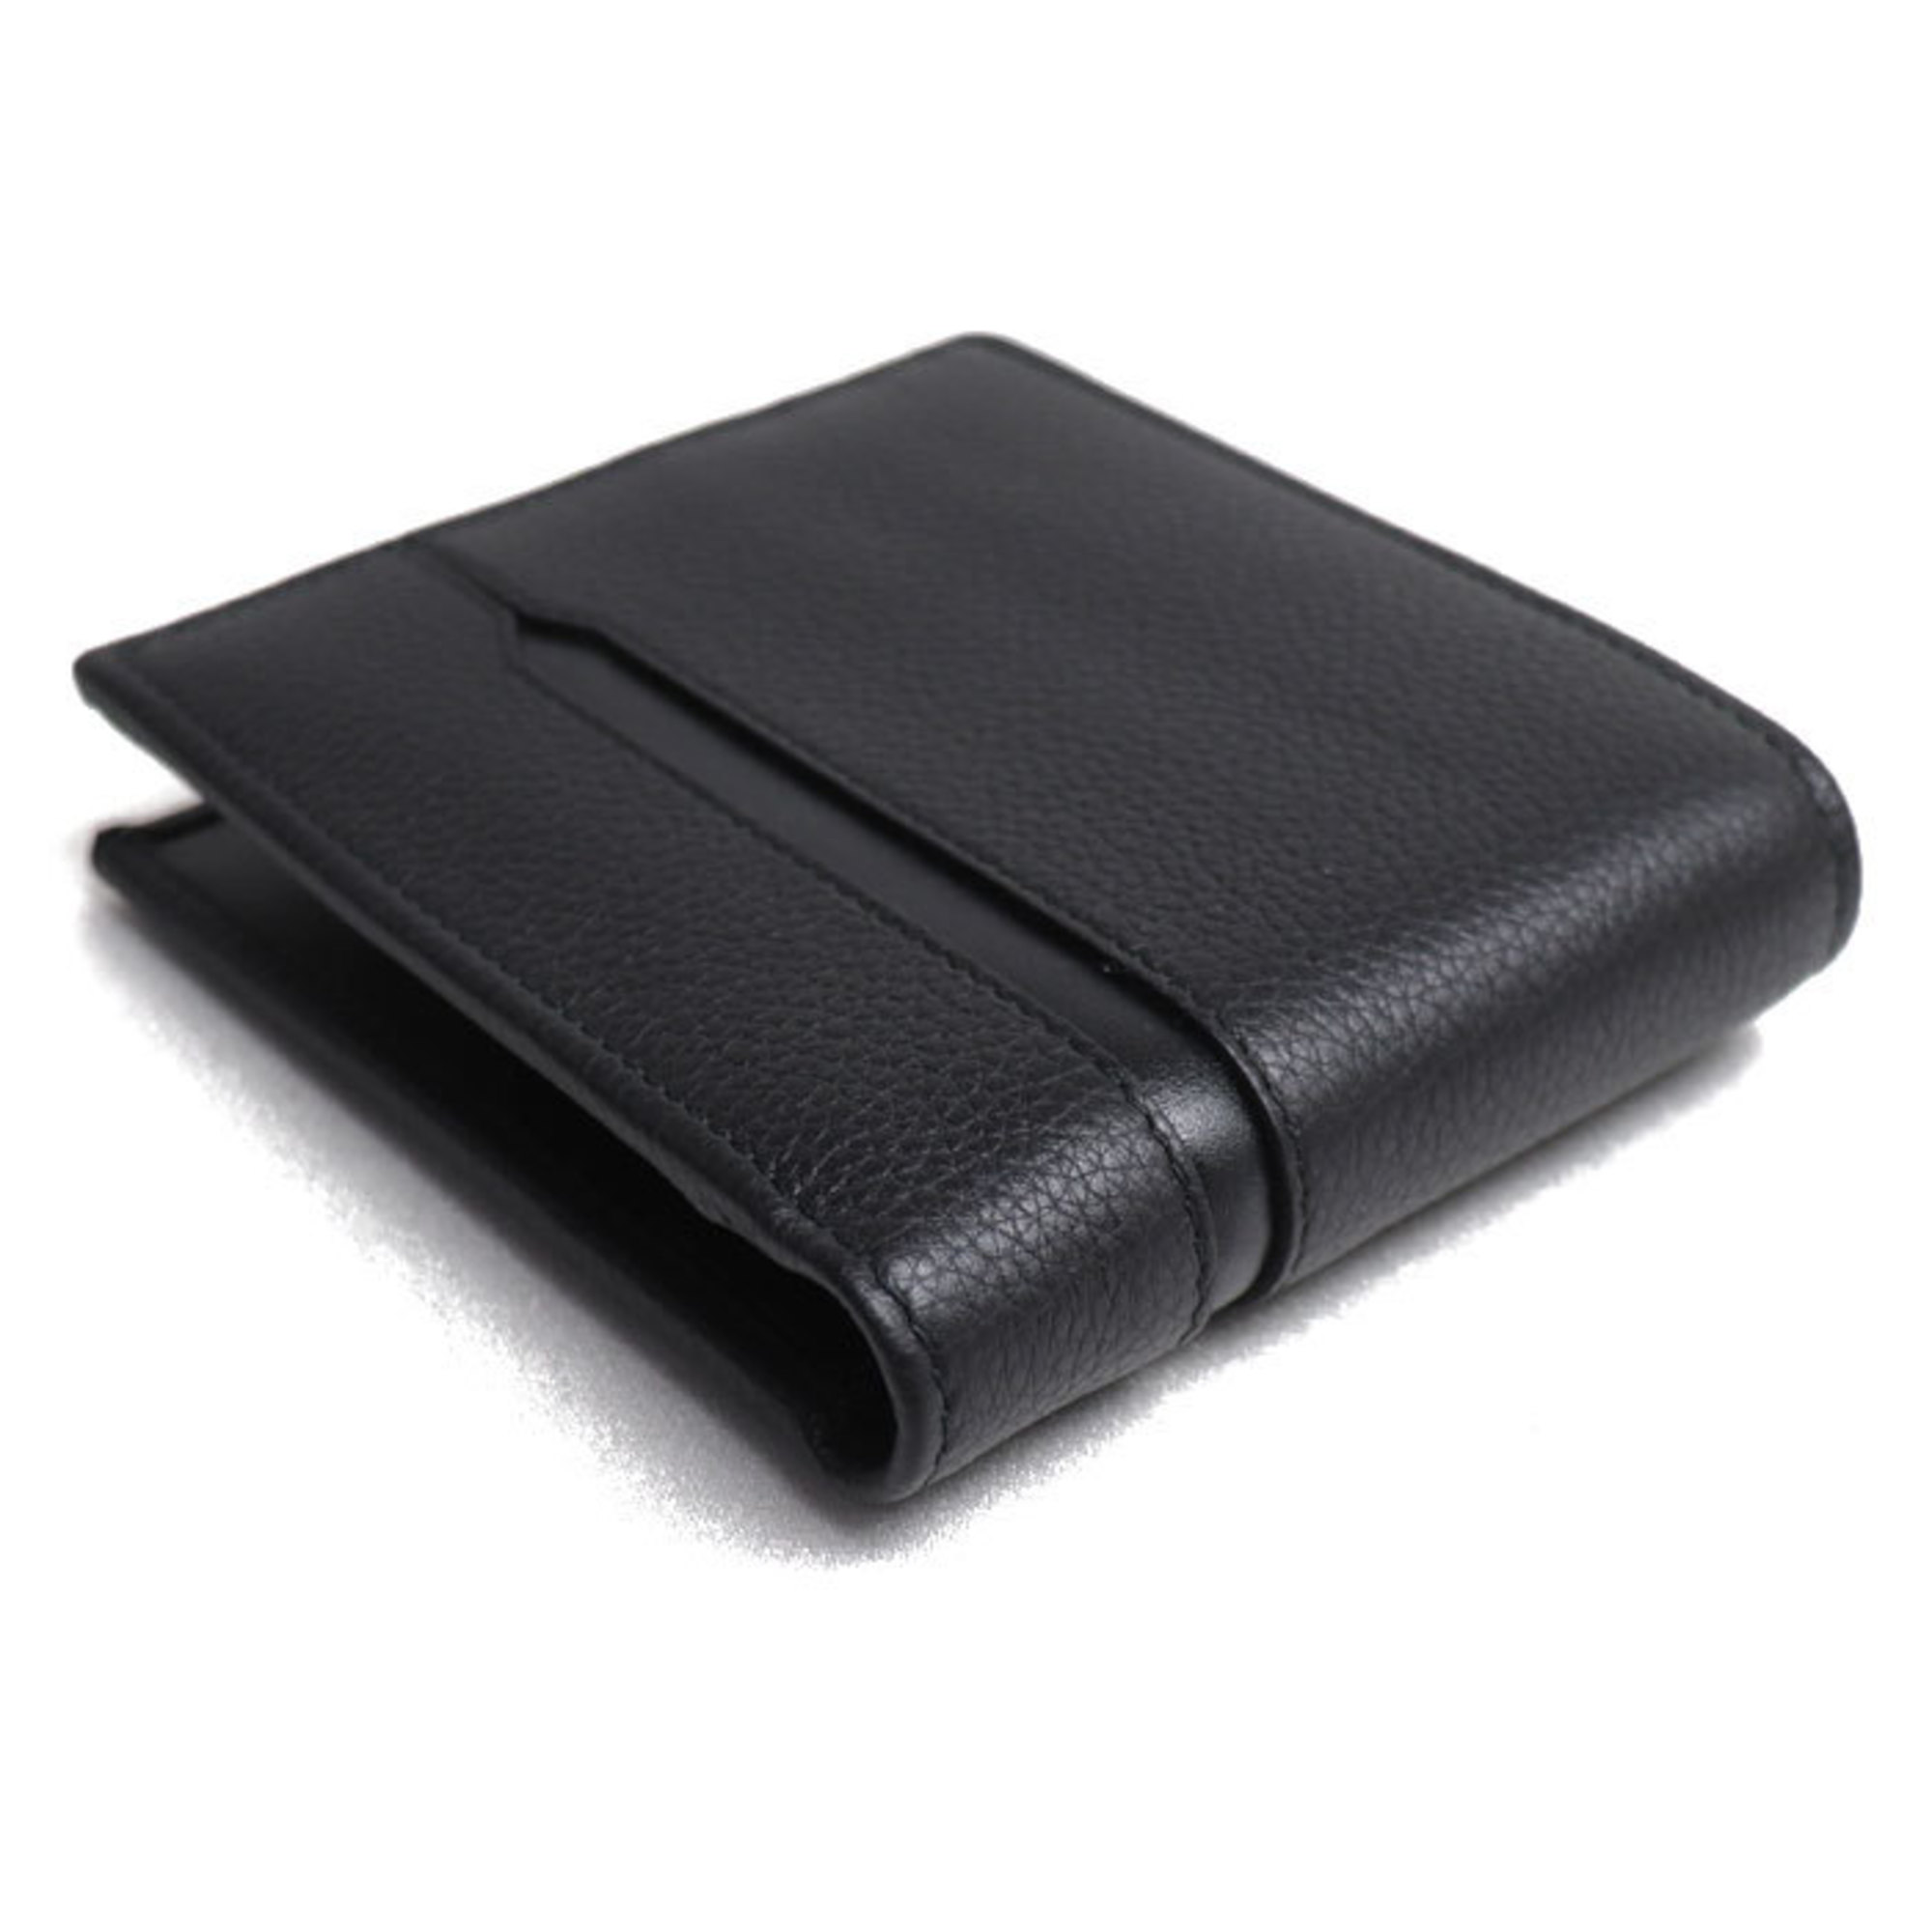 BVLGARI Octo Bi-fold Wallet Black 36964 Men's